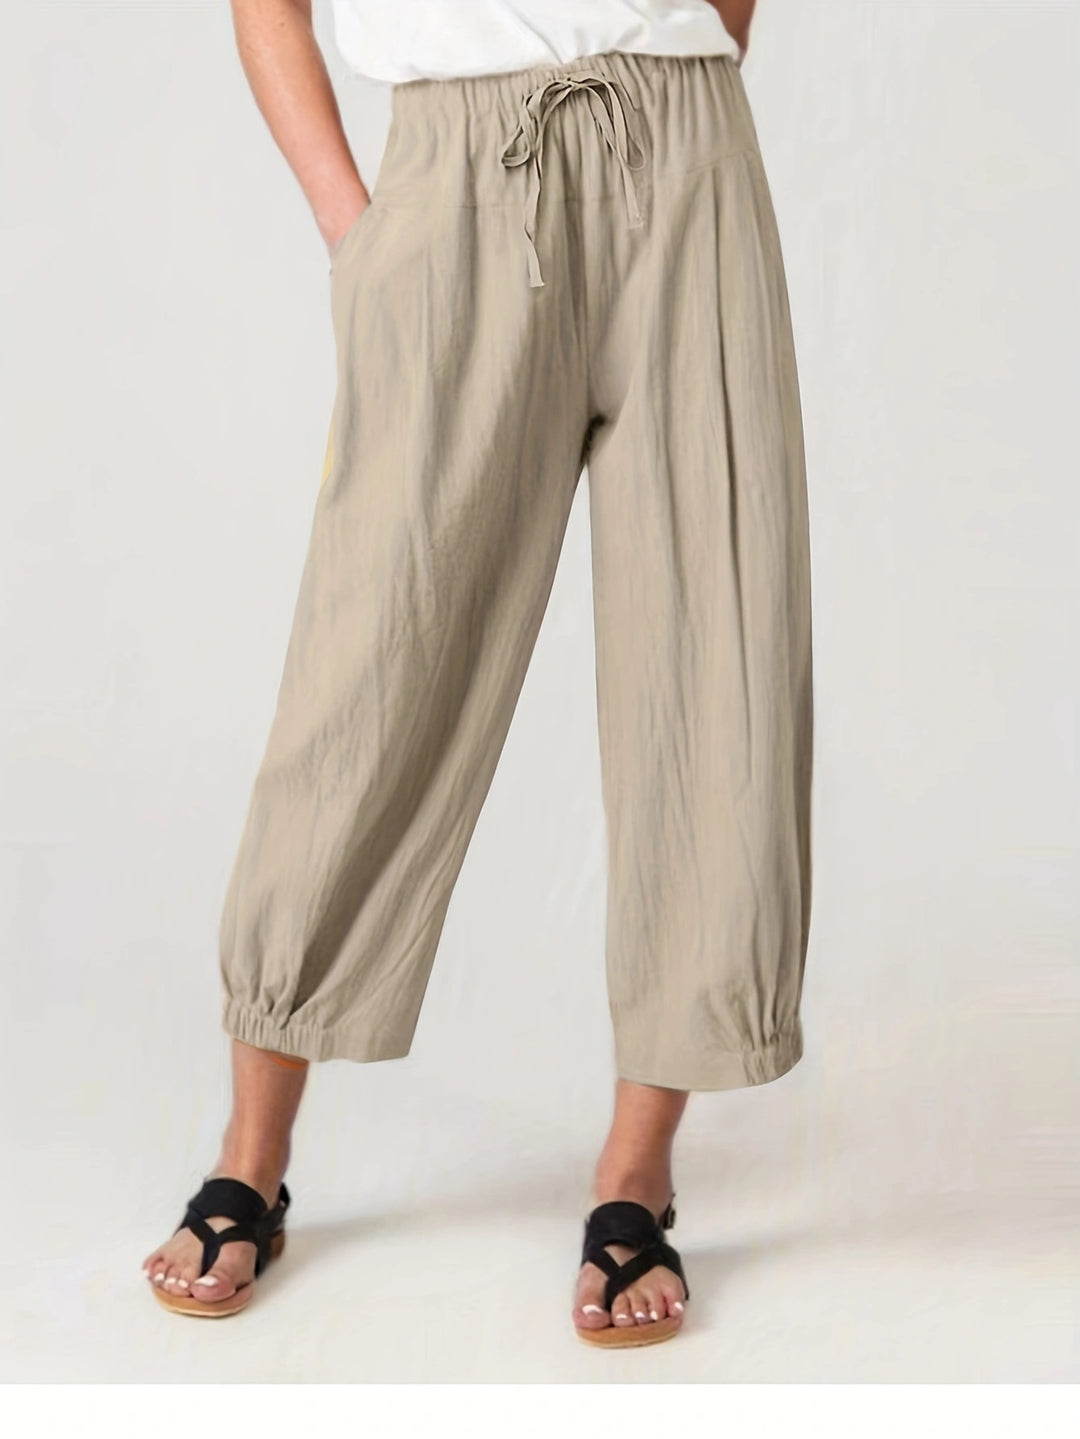 Summer Cropped Pants Pocket Casual Pants Women Loose Wide Leg Pants outside